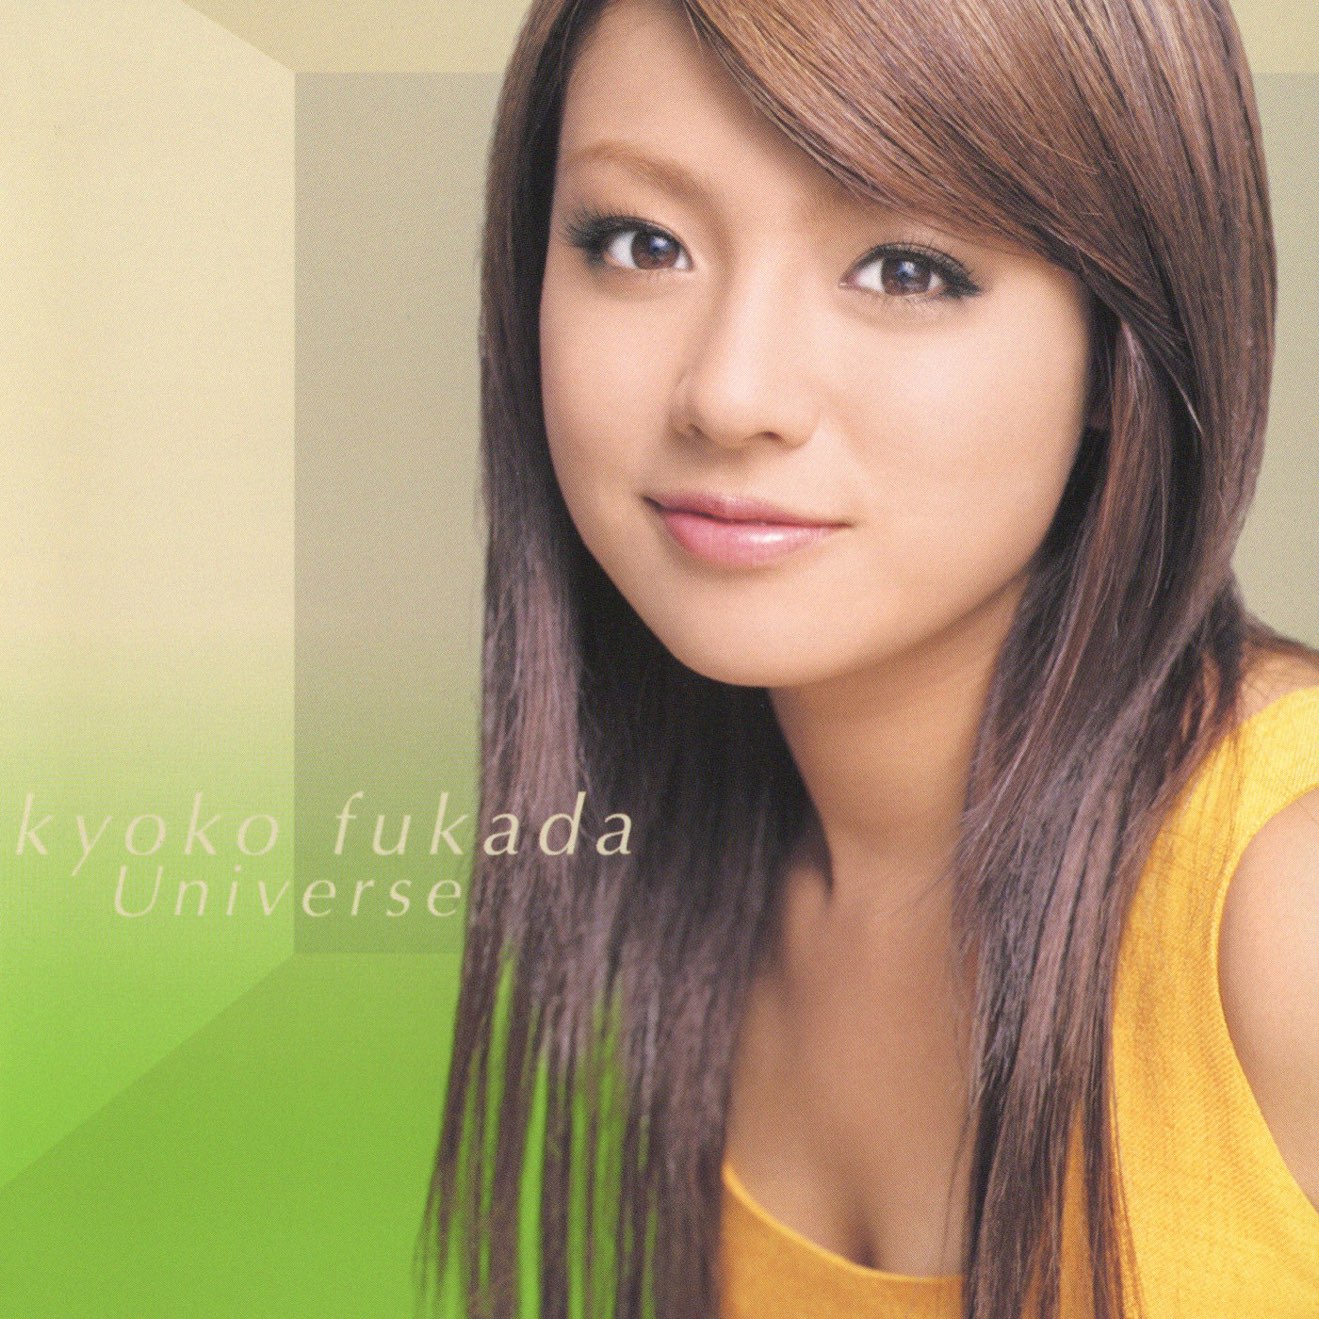 Kyoko Fukada – Universe (2001) [iTunes Match M4A]